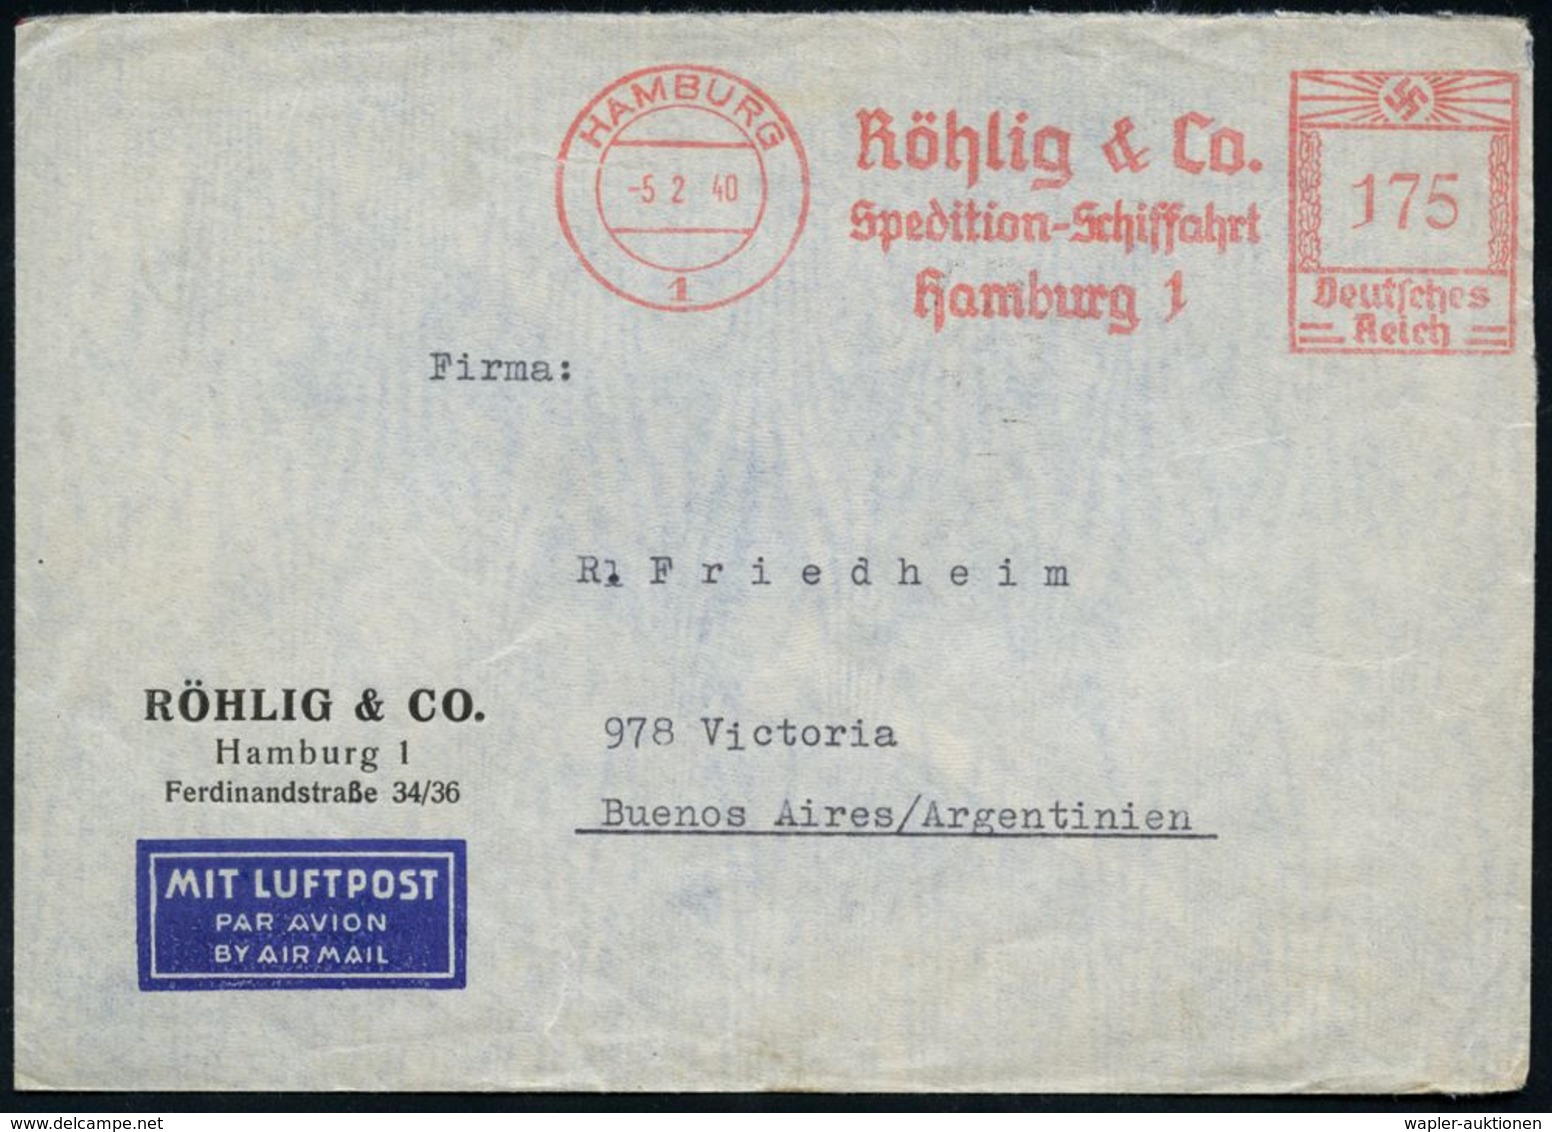 HAMBURG/ 1/ Röhlig & Co/ Spedition-Schiffahrt 1940 (5.2.) AFS 175 Pf. + Rs. Zensur-Streifen "Geöffnet/OKW" (= Ffm., Rie. - Andere (Lucht)